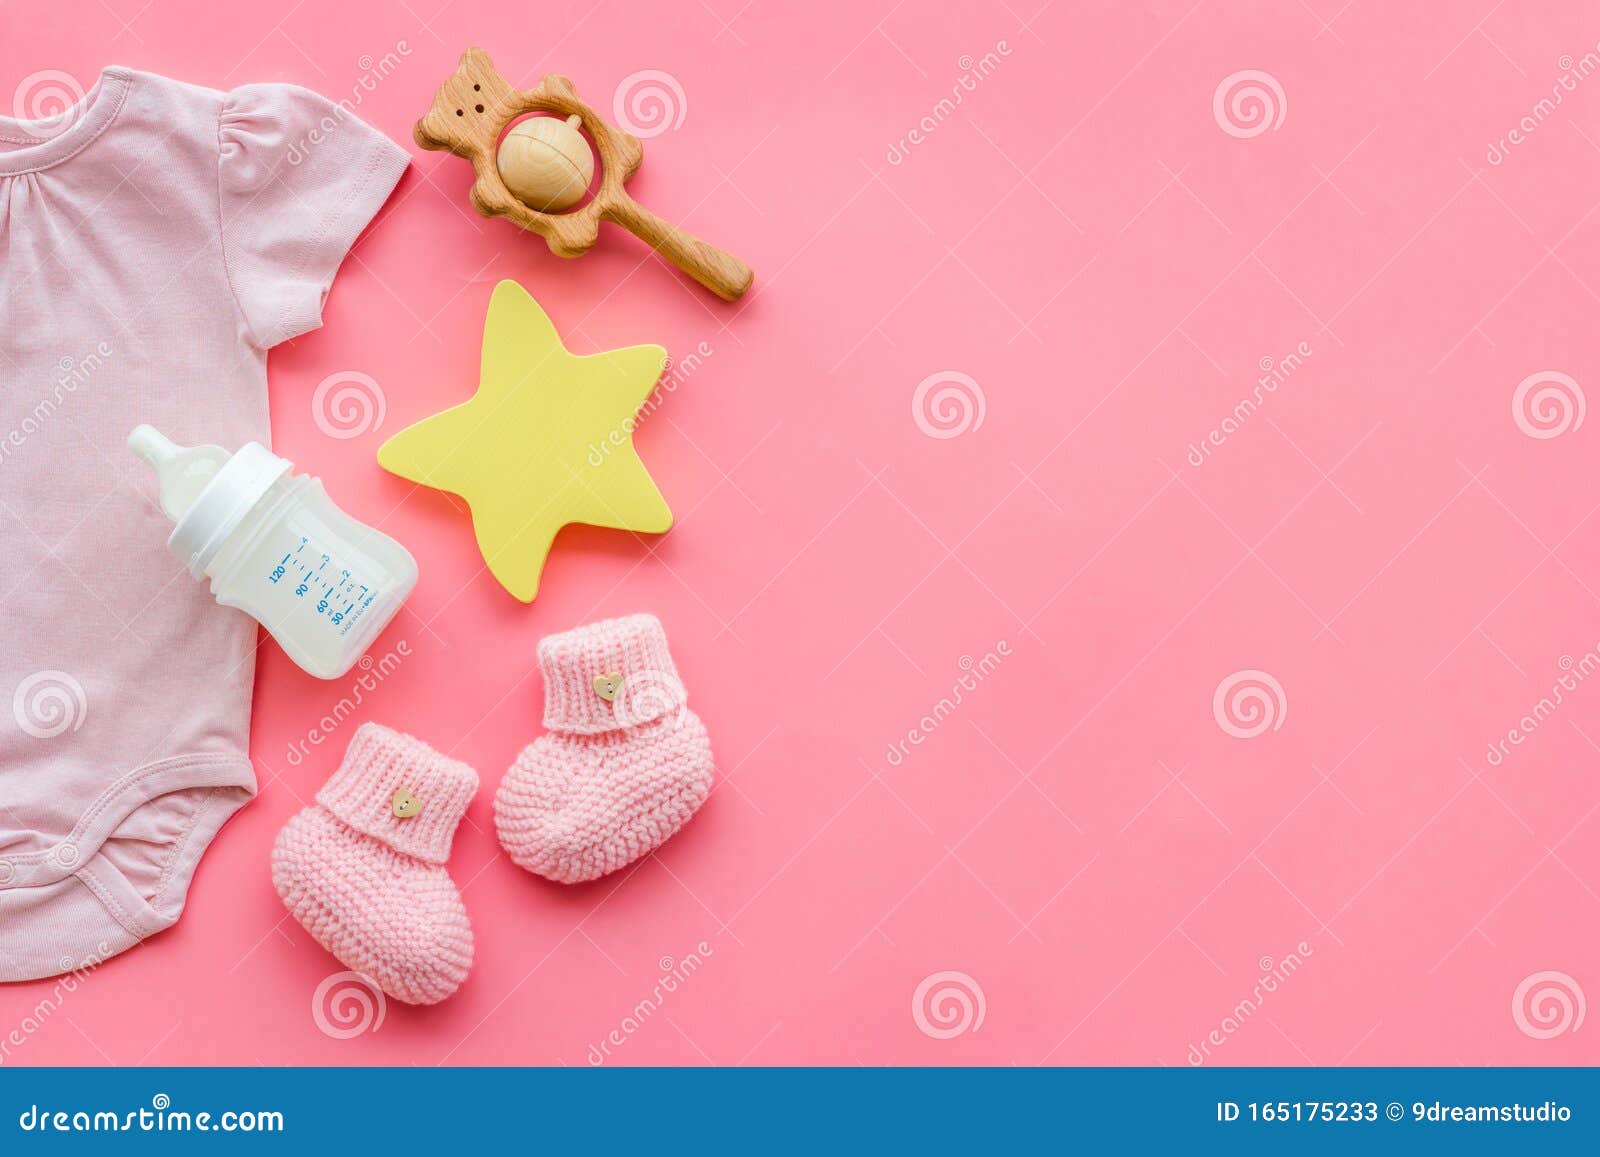 Tìm kiếm những trang phục, giày dép, phụ kiện màu hồng để trang trí cho bé gái yêu của bạn đang là mối quan tâm hàng đầu? Hãy cùng khám phá những hình nền trẻ sơ sinh màu hồng đầy tình cảm để tạo ra một không gian đẹp và quyến rũ cho bé của bạn.